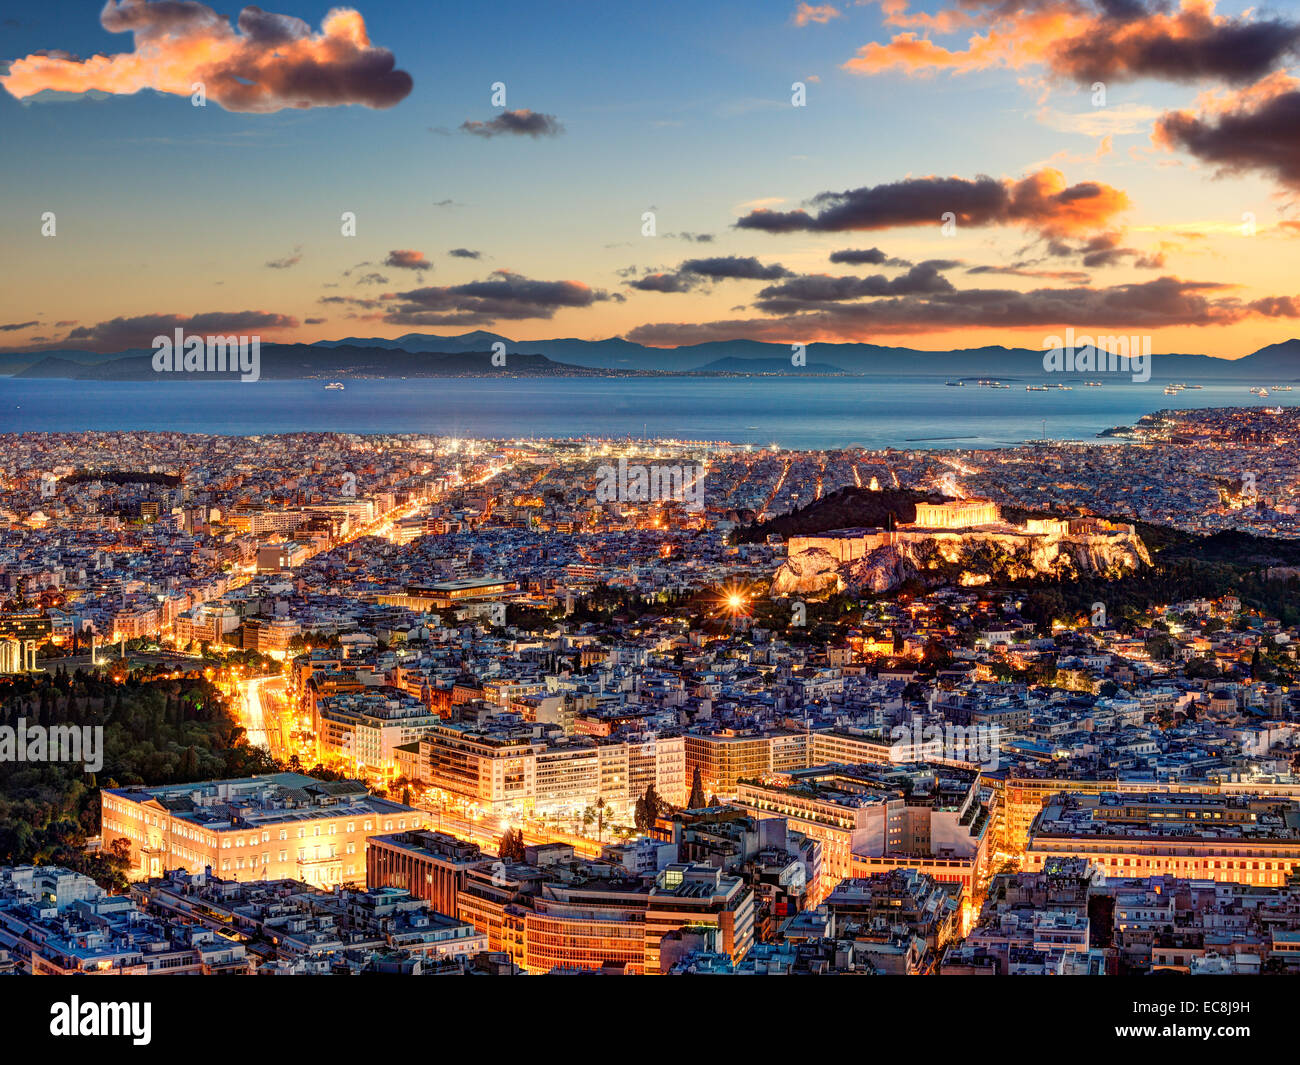 Atene dopo il tramonto con una vista del Partenone dell'Acropoli e del Parlamento e isole del golfo Saronico in Grecia Foto Stock